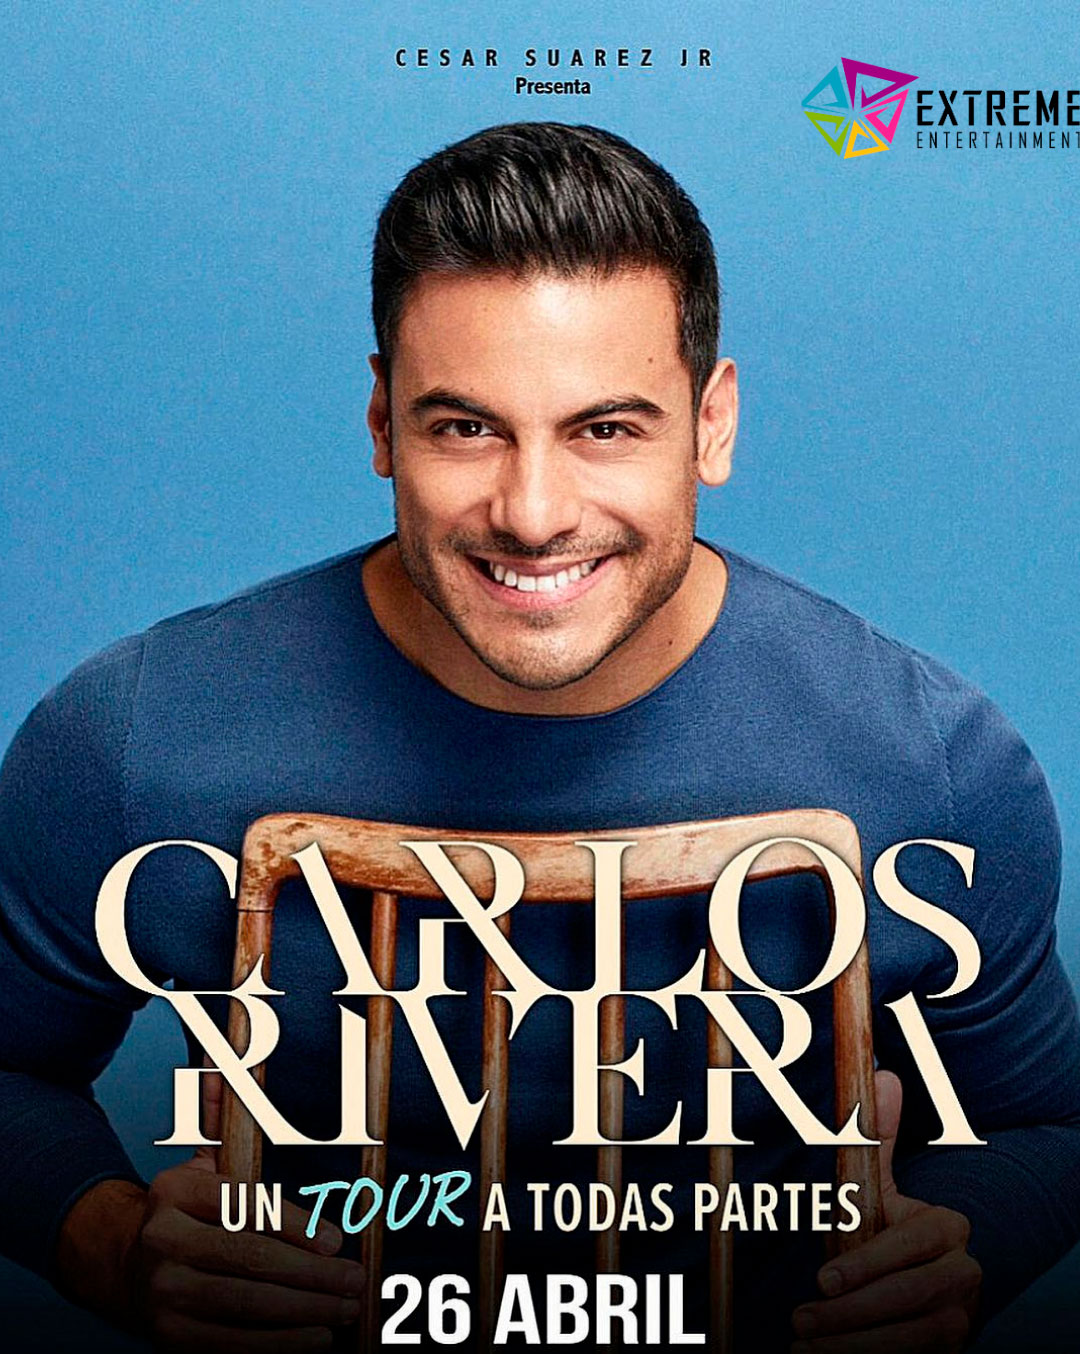 Carlos Rivera “Un tour por todas partes” Extreme Entertaiment RD